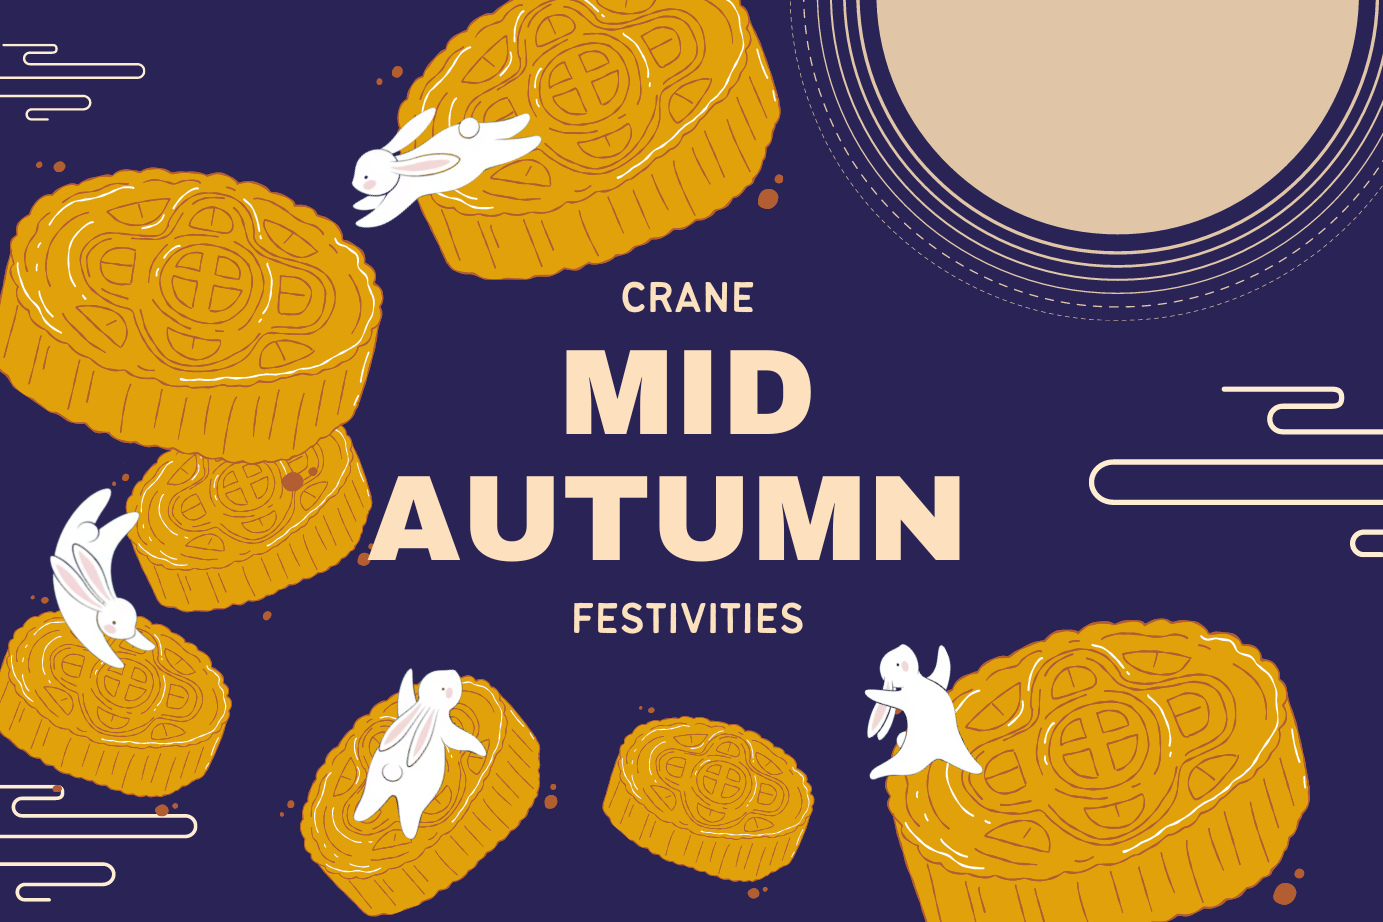 Mid-Autumn Festivities